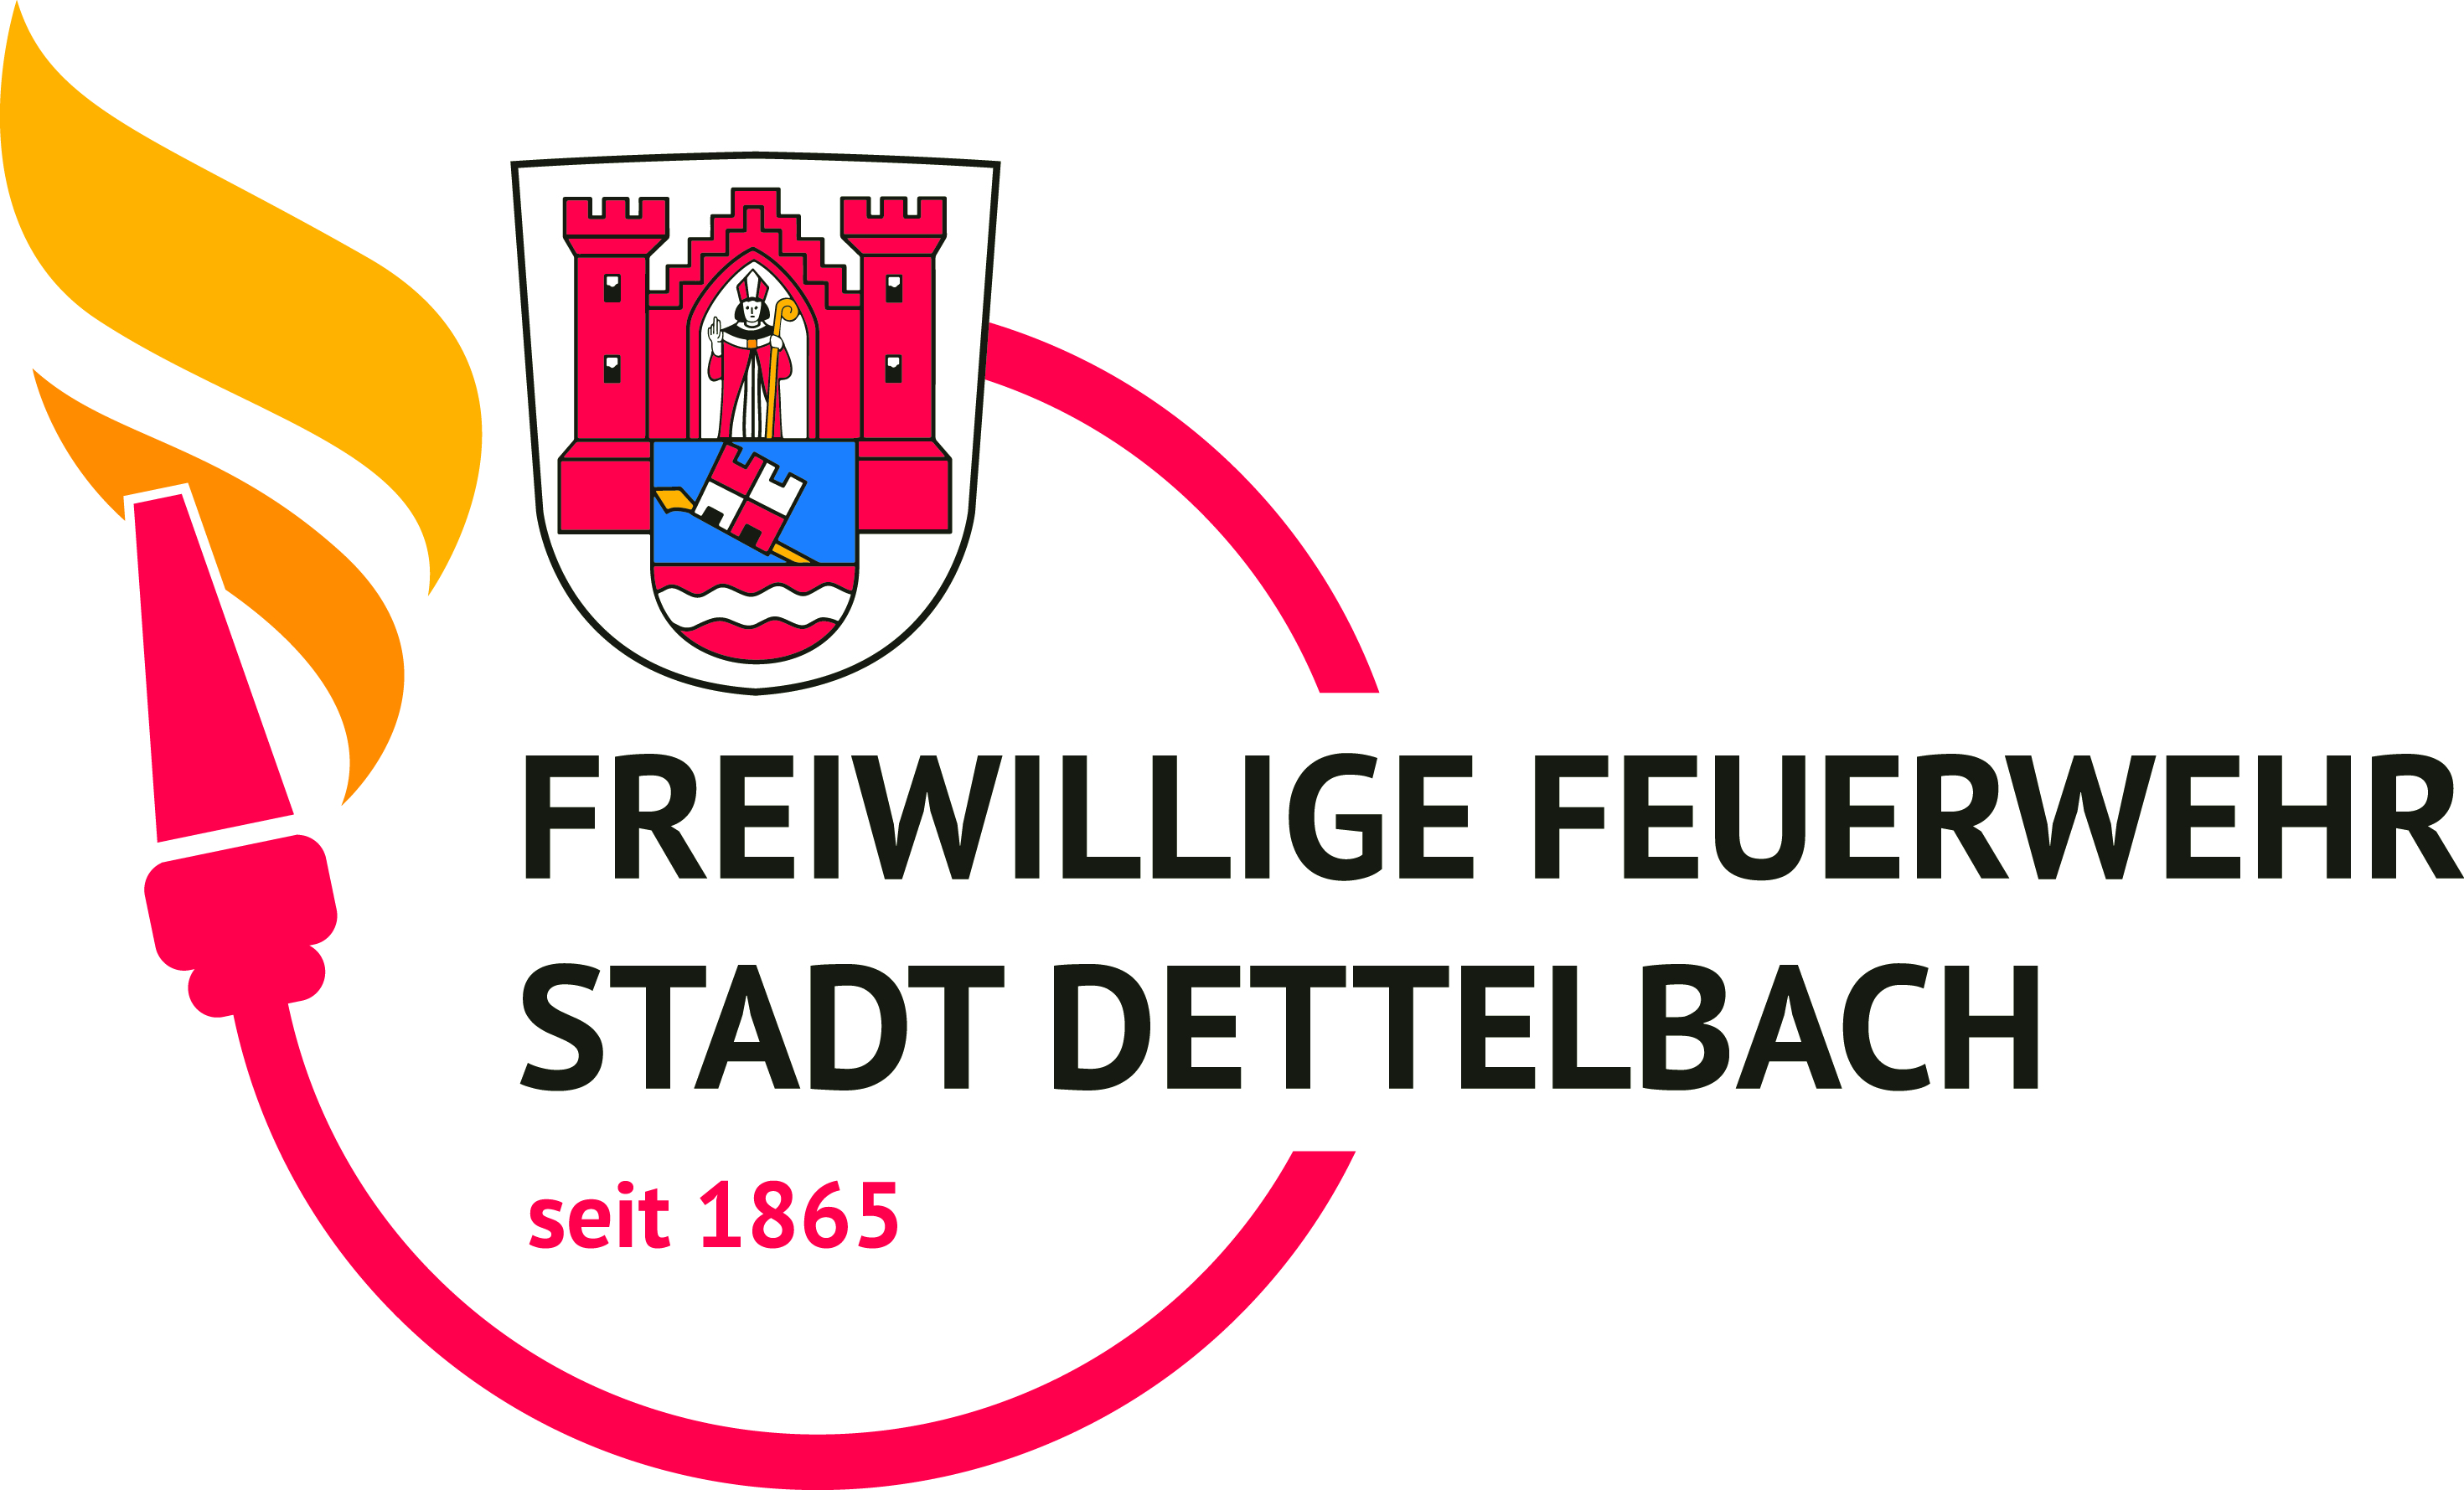 Freiwillige Feuerwehr Stadt Dettelbach e.V.